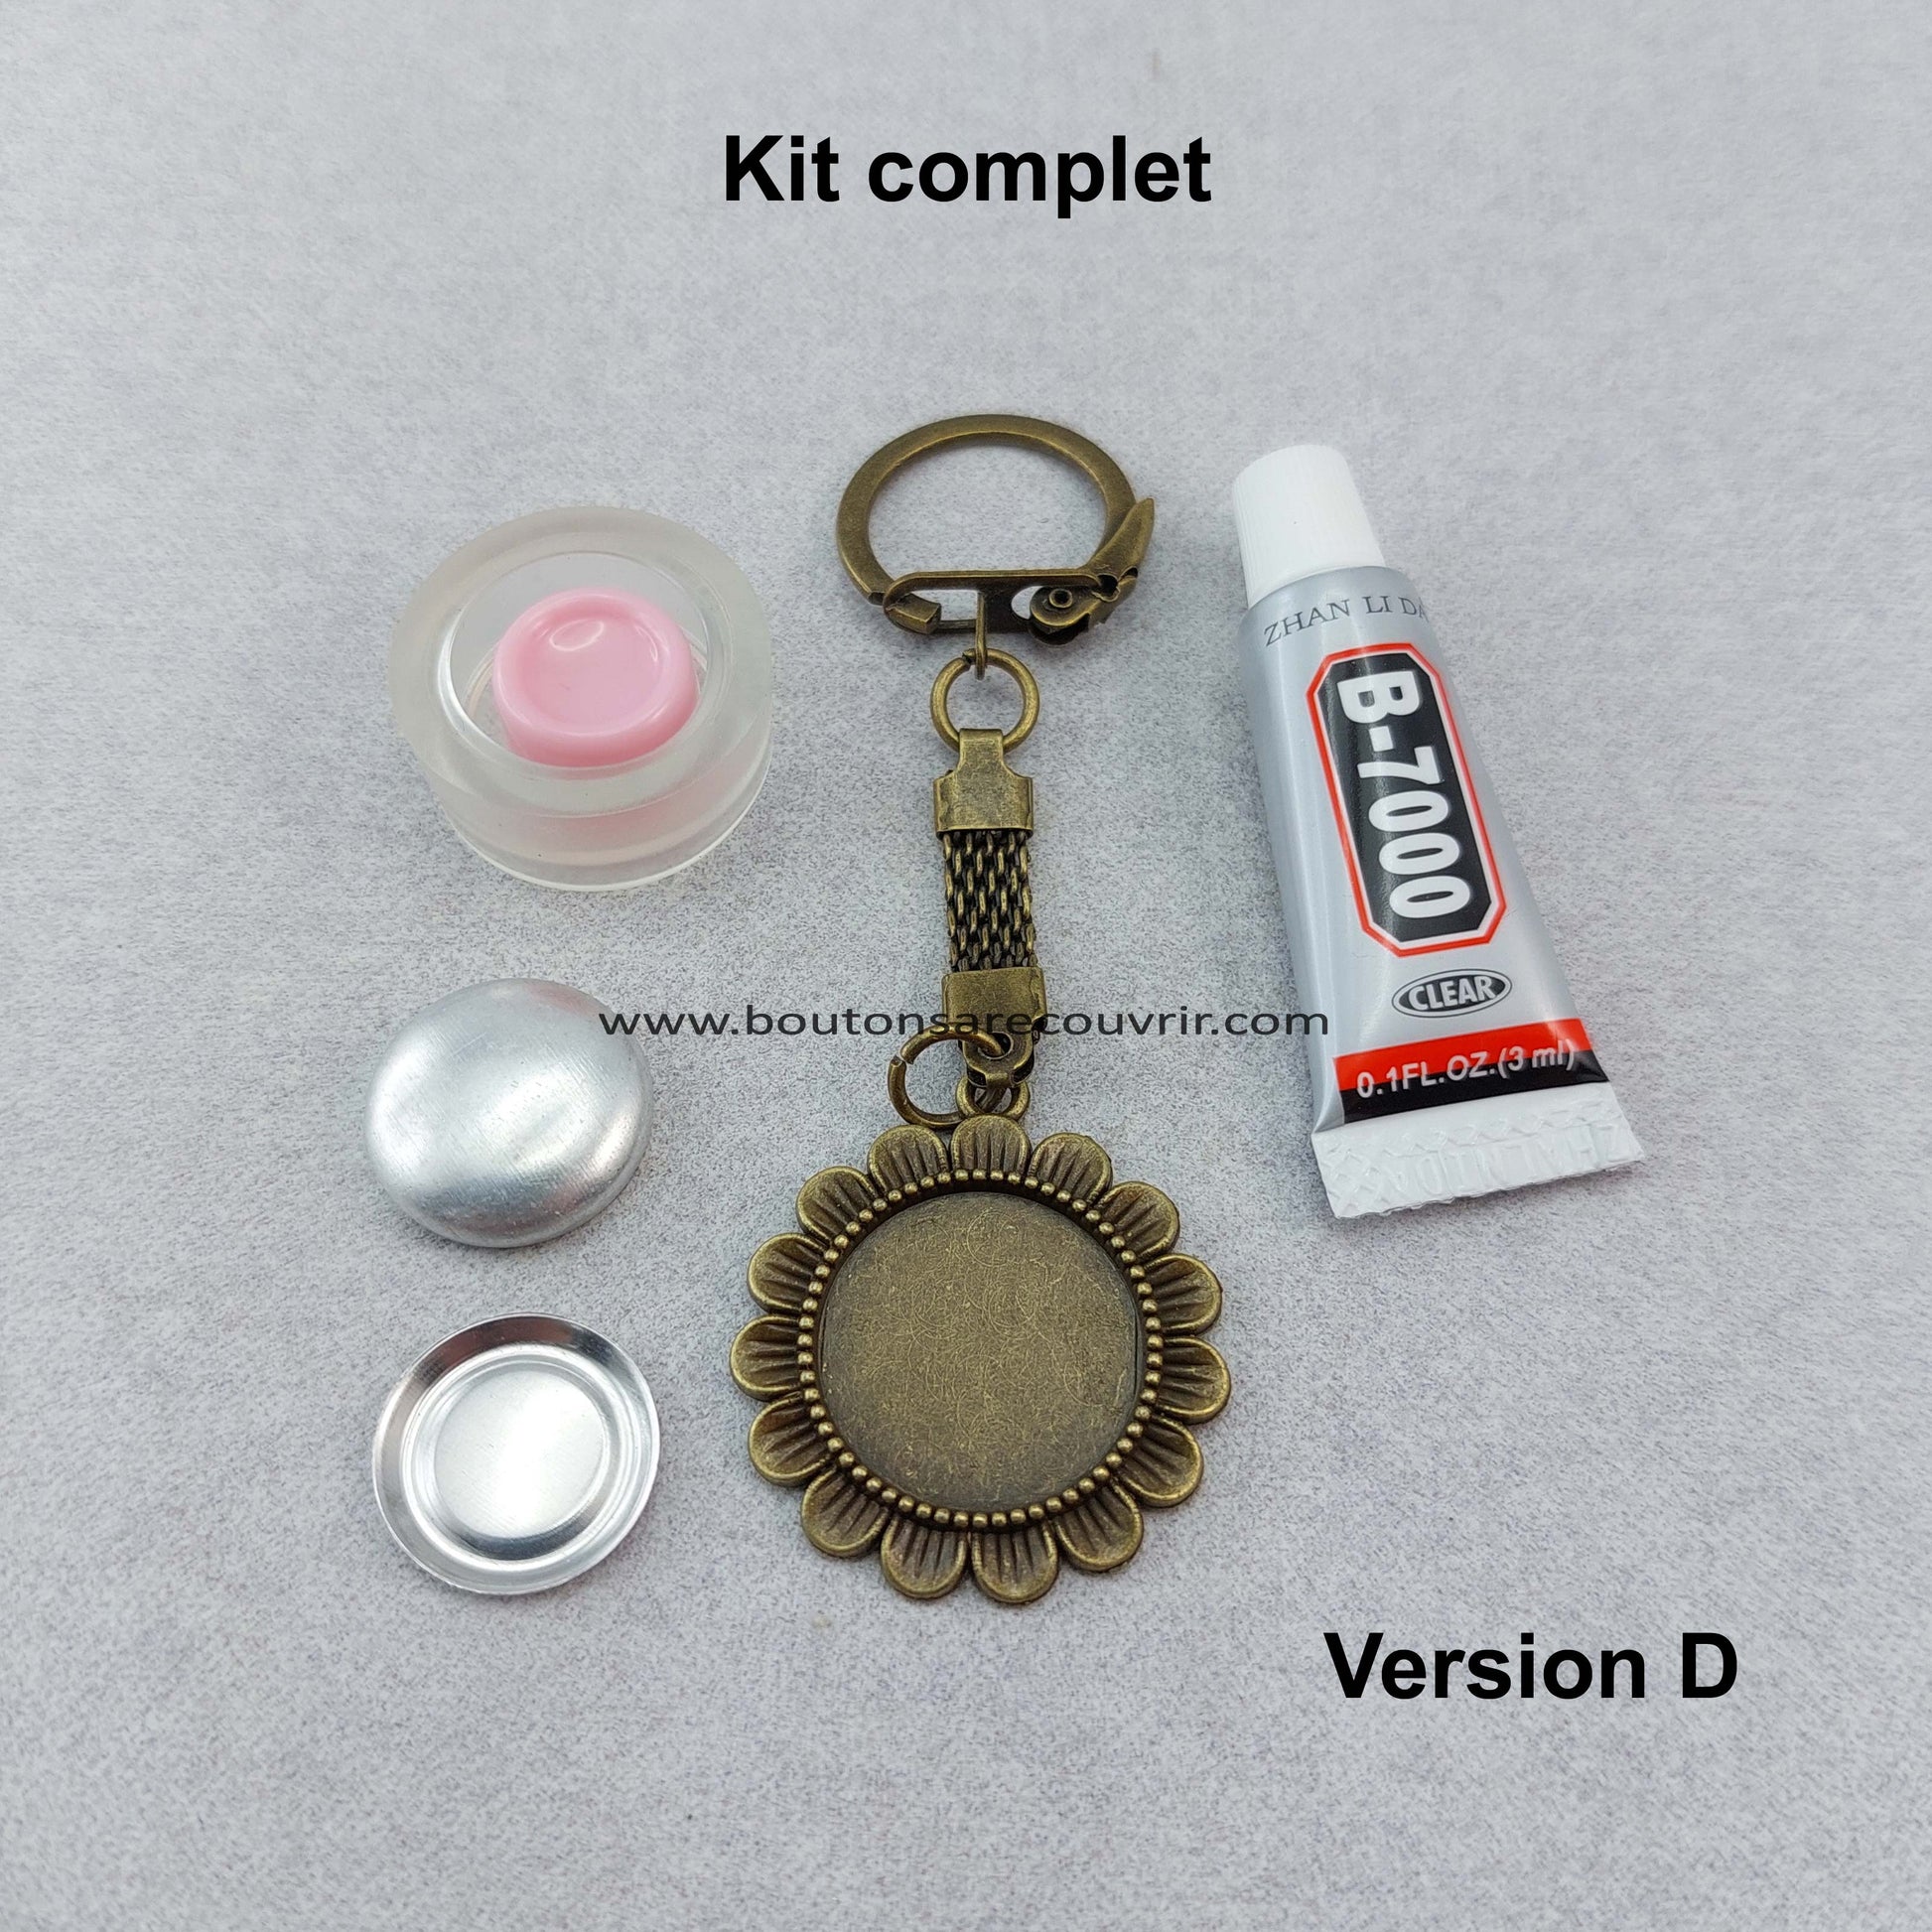 Porte-clés personnalisable kit complet